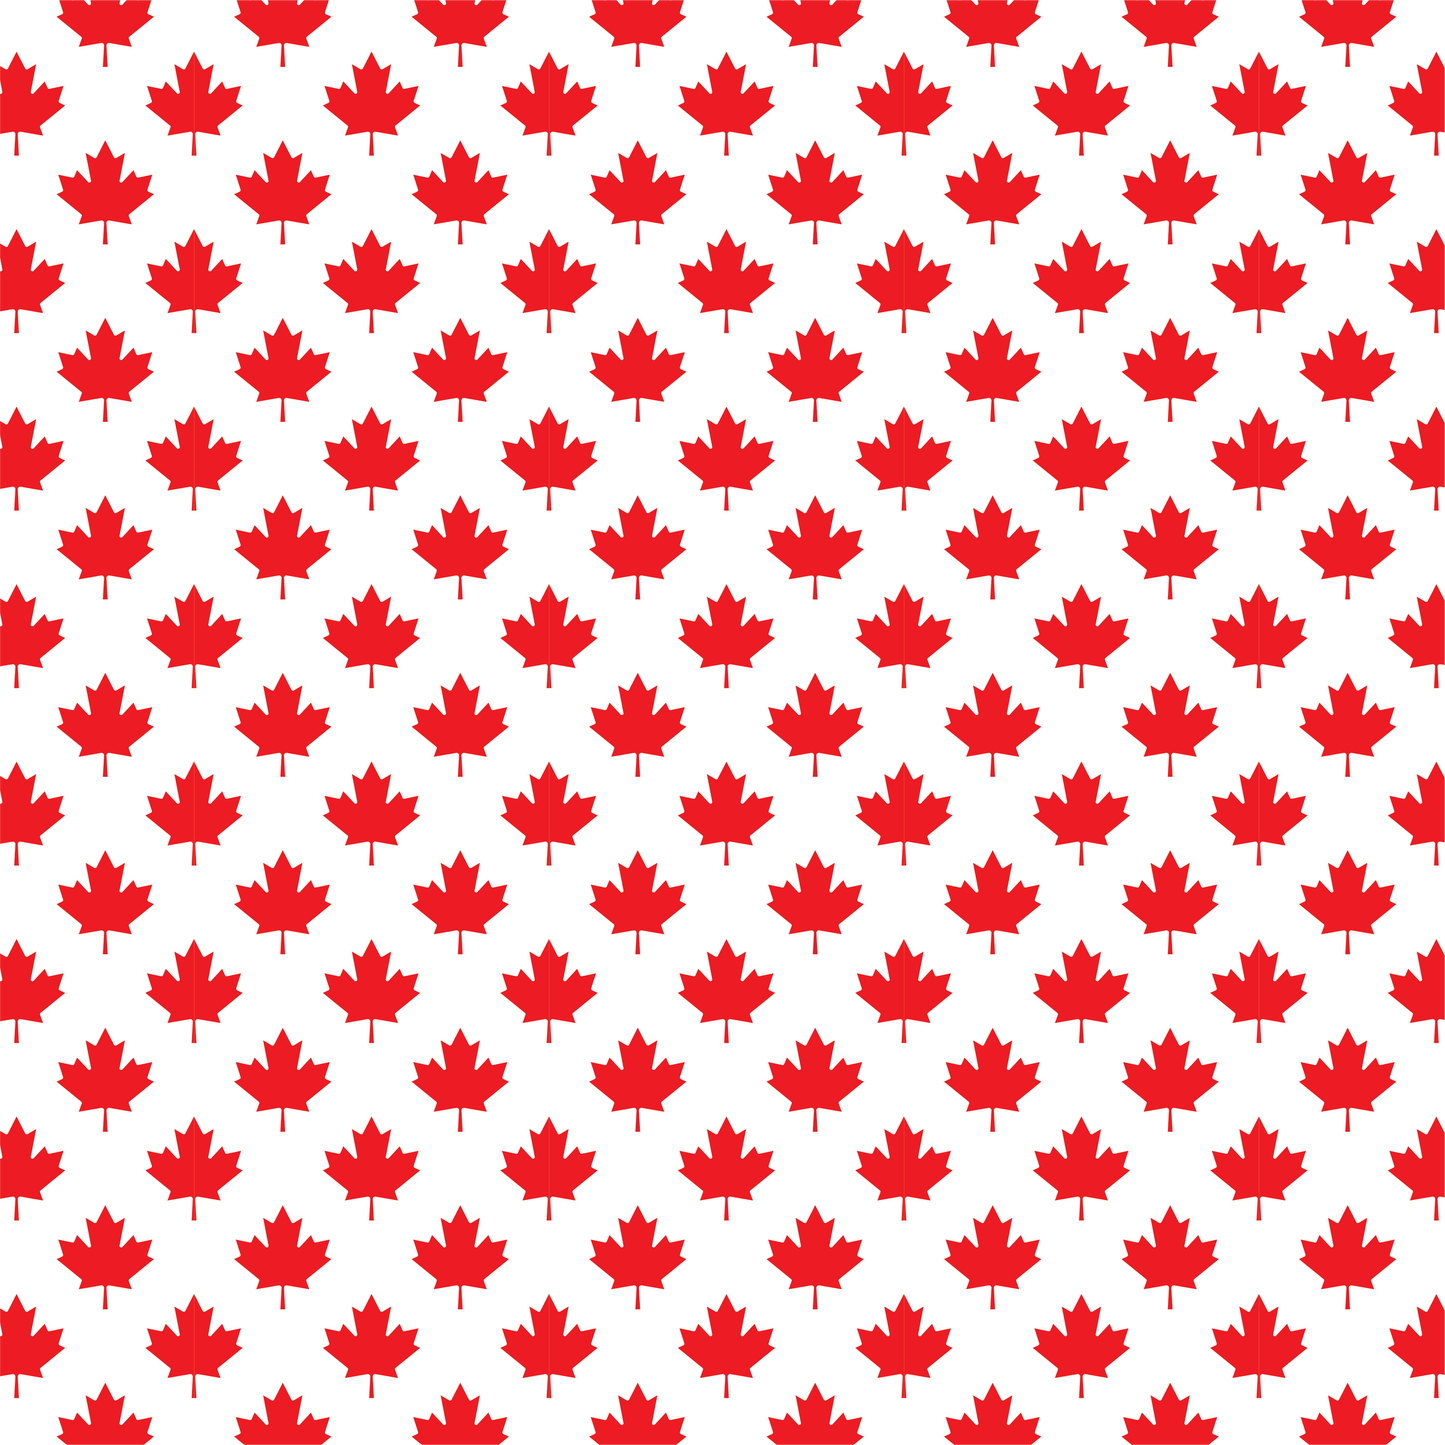 Fête du Canada - Feuilles d'érable rouge 001